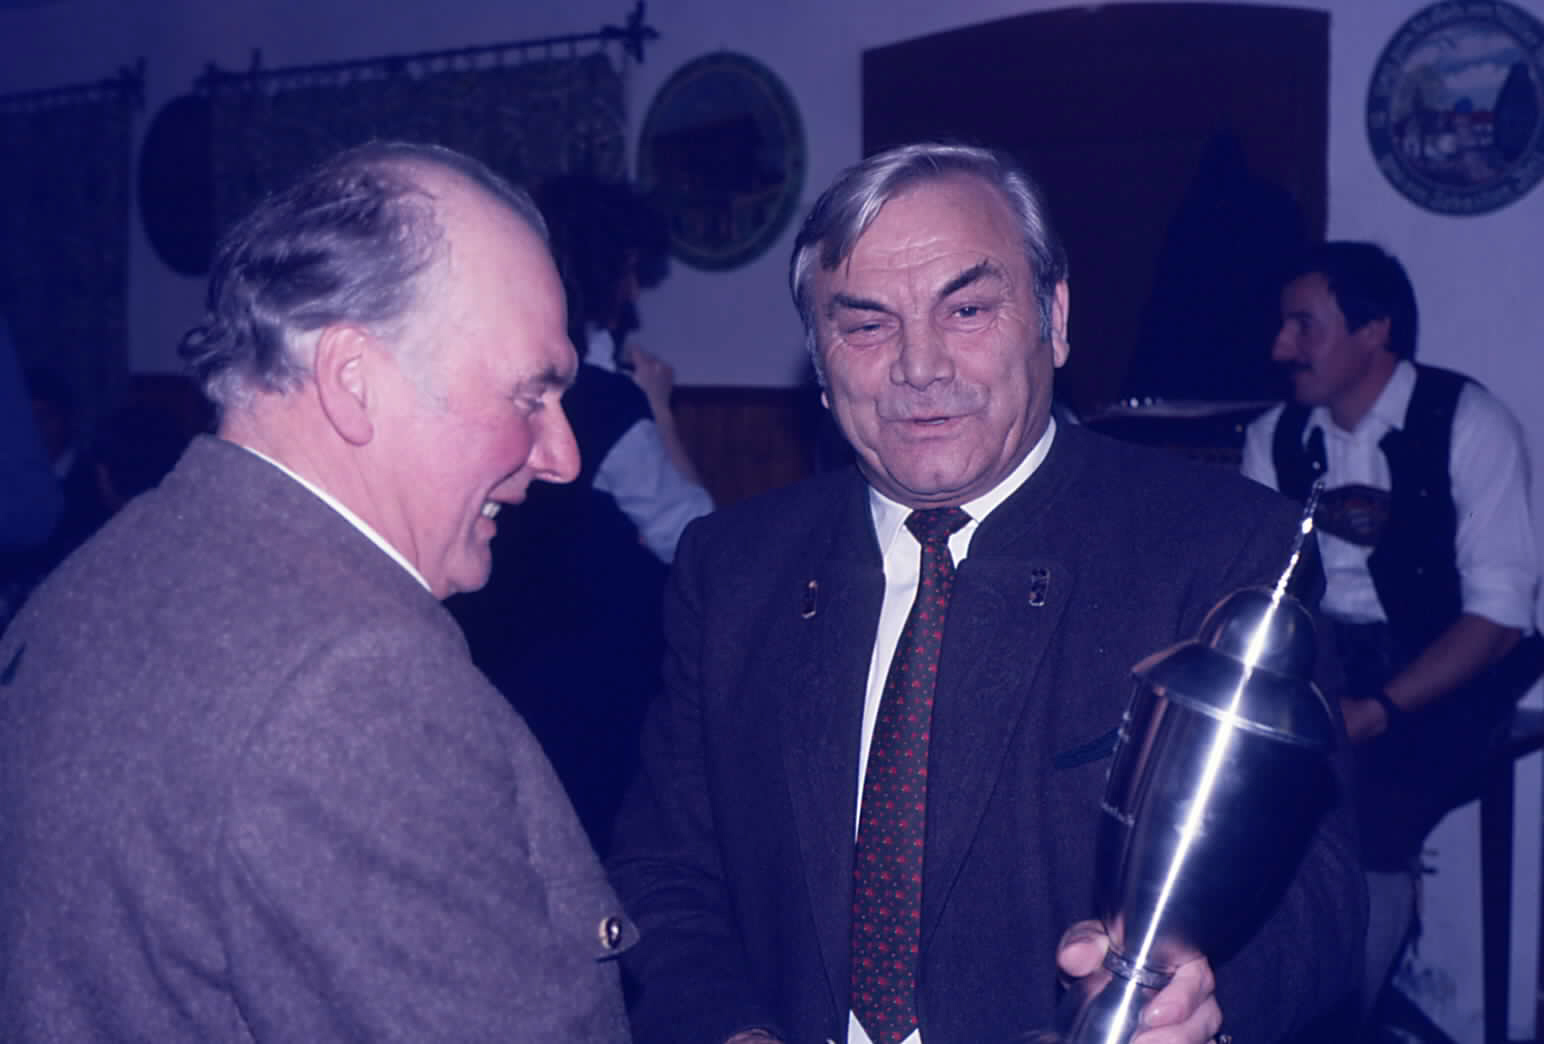 Preisverteilung Gemeindepokal 1985 Bürgermeister Josef Kalkhofer überreicht Siegerpokal an Georg Portenlänger